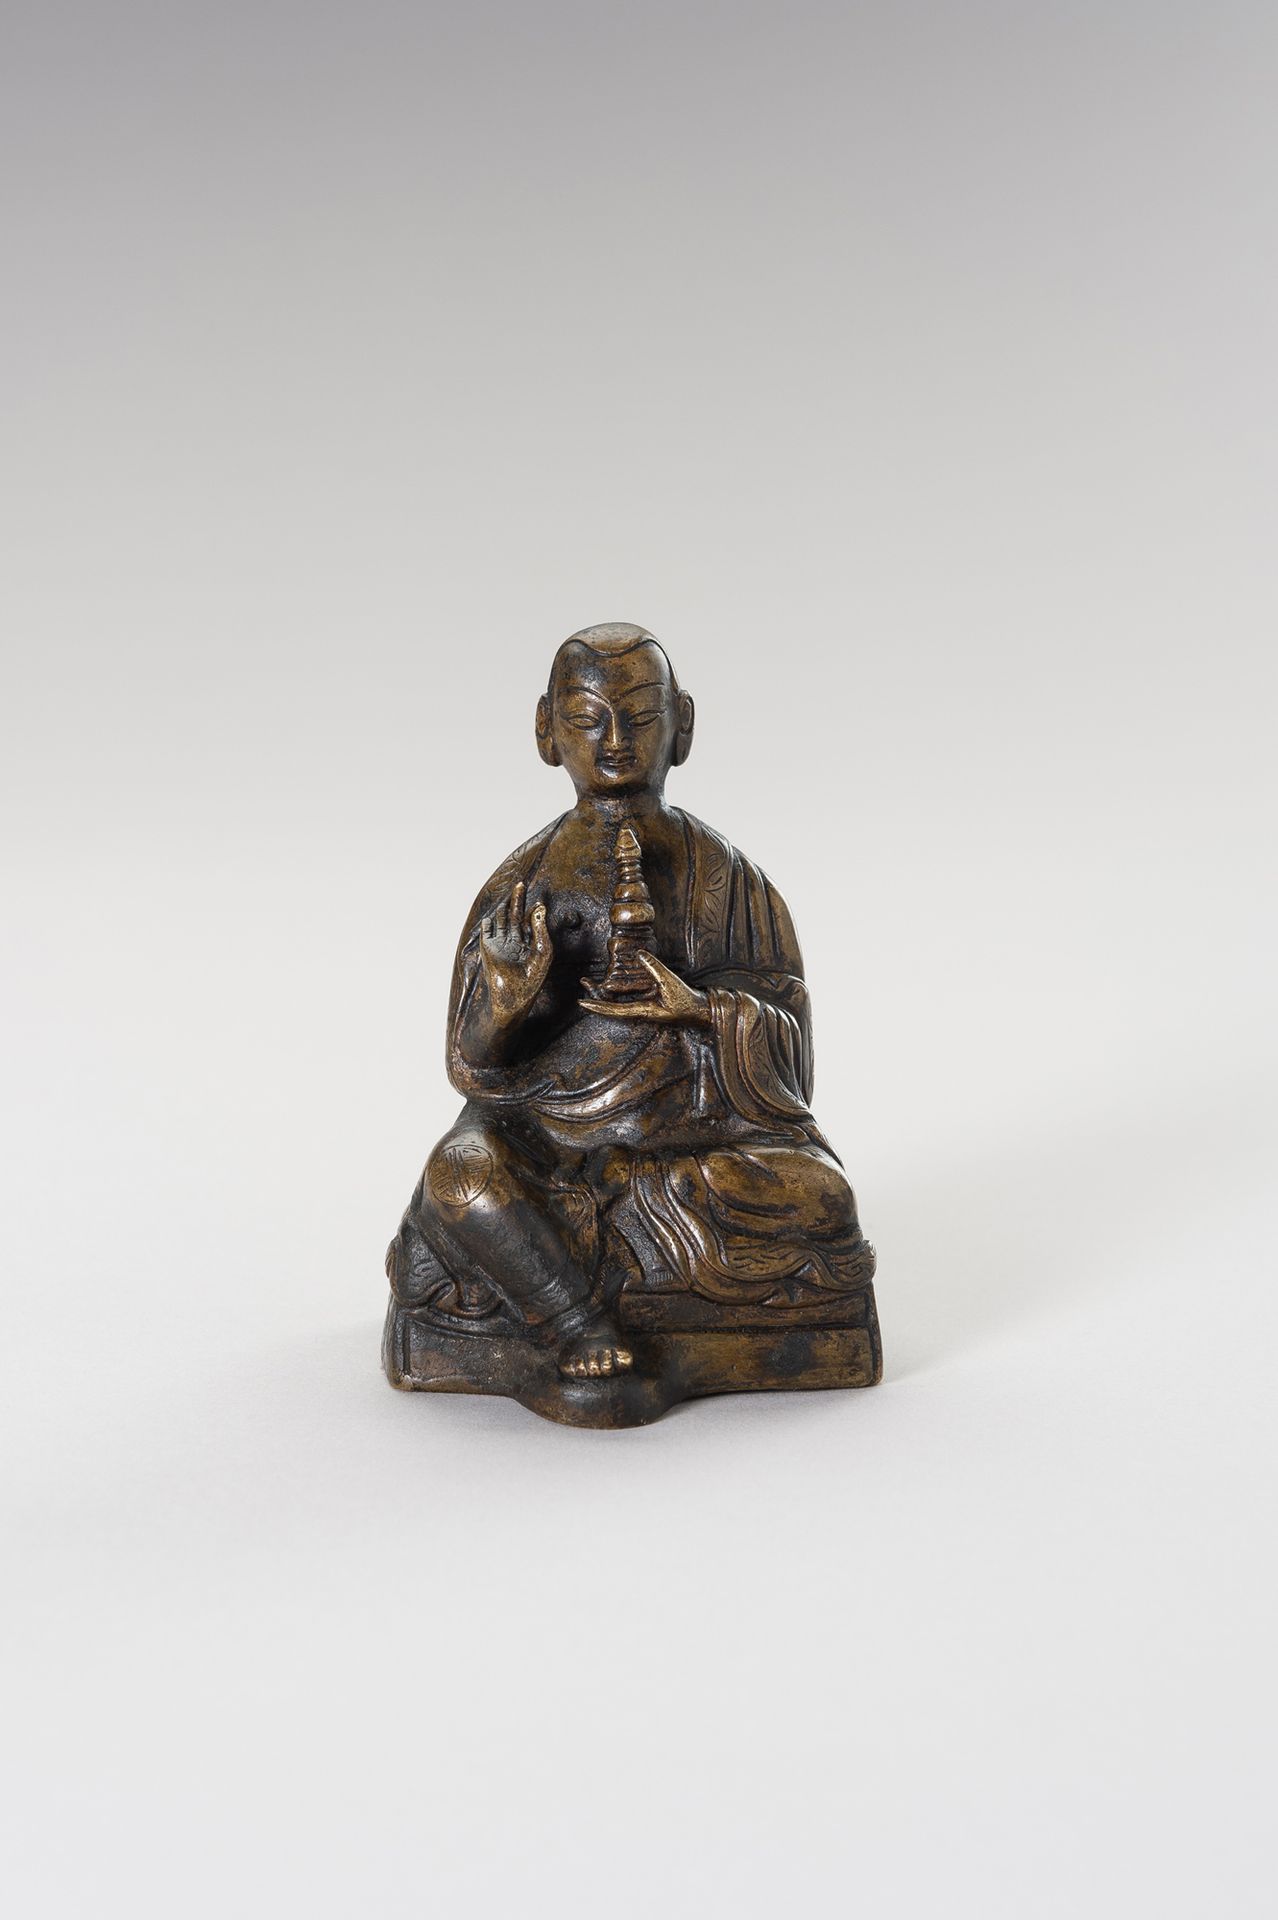 A Bronze figure of a Lama 喇嘛铜像
西藏，19 世纪。喇嘛坐着，右手拿着维拉卡穆德，左手拿着佛塔，袈裟上有雕刻的边框。脸部表情安详，杏&hellip;